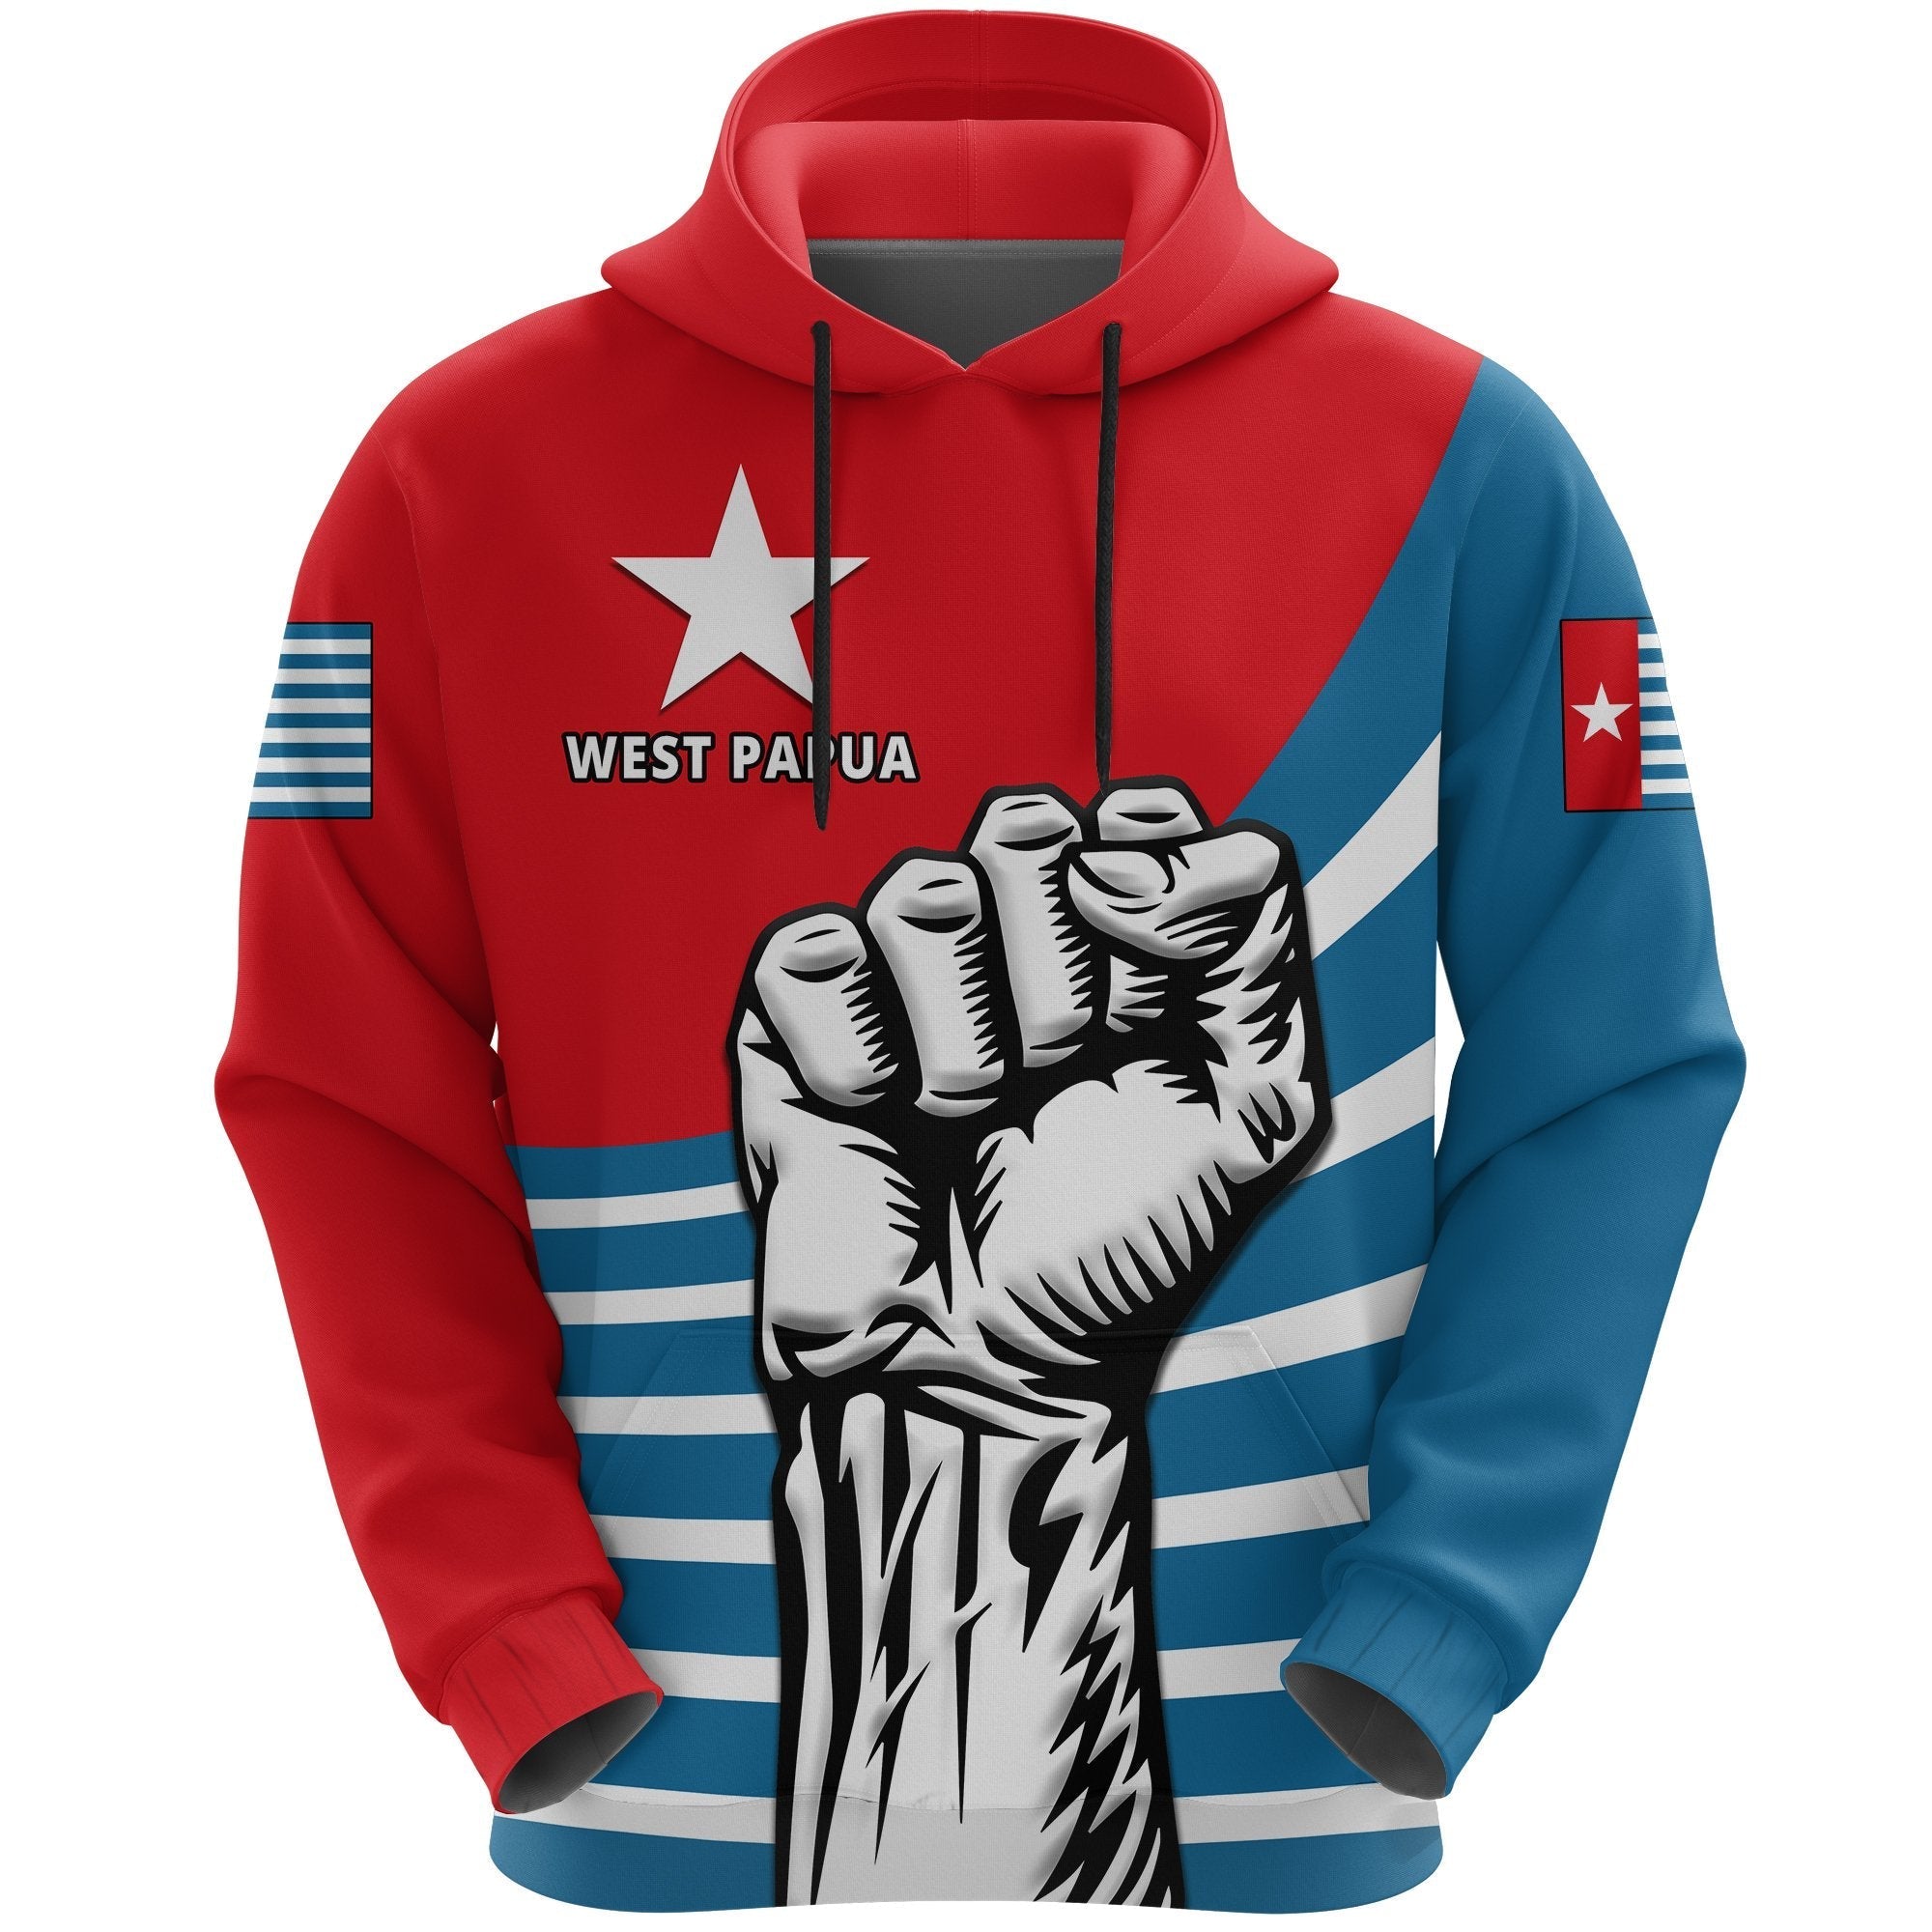 free-west-papua-hoodie